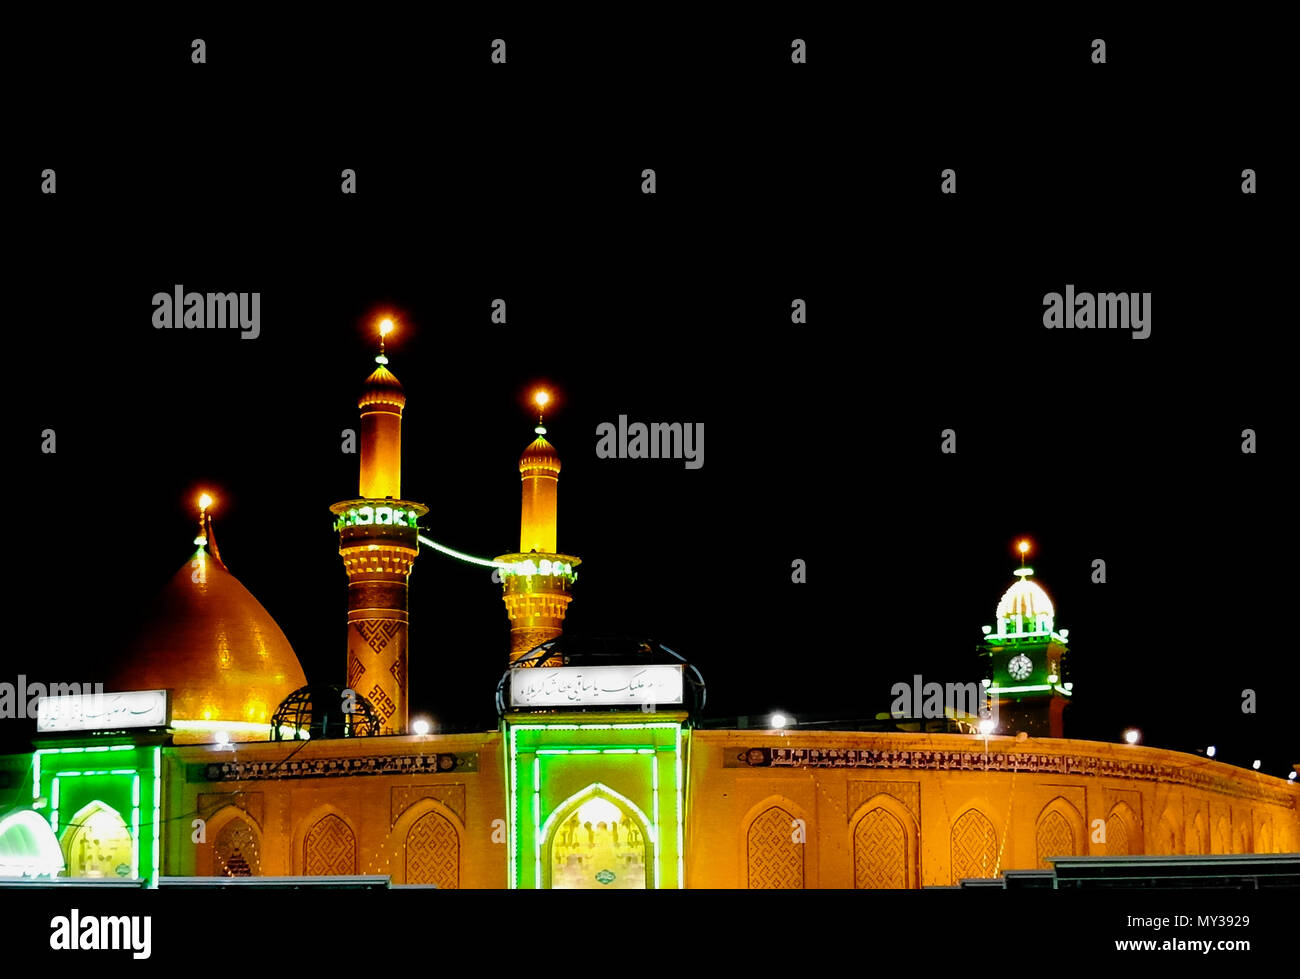 Shrine of Imam Hussain ibn Ali at night, Karbala, Iraq Stock Photo